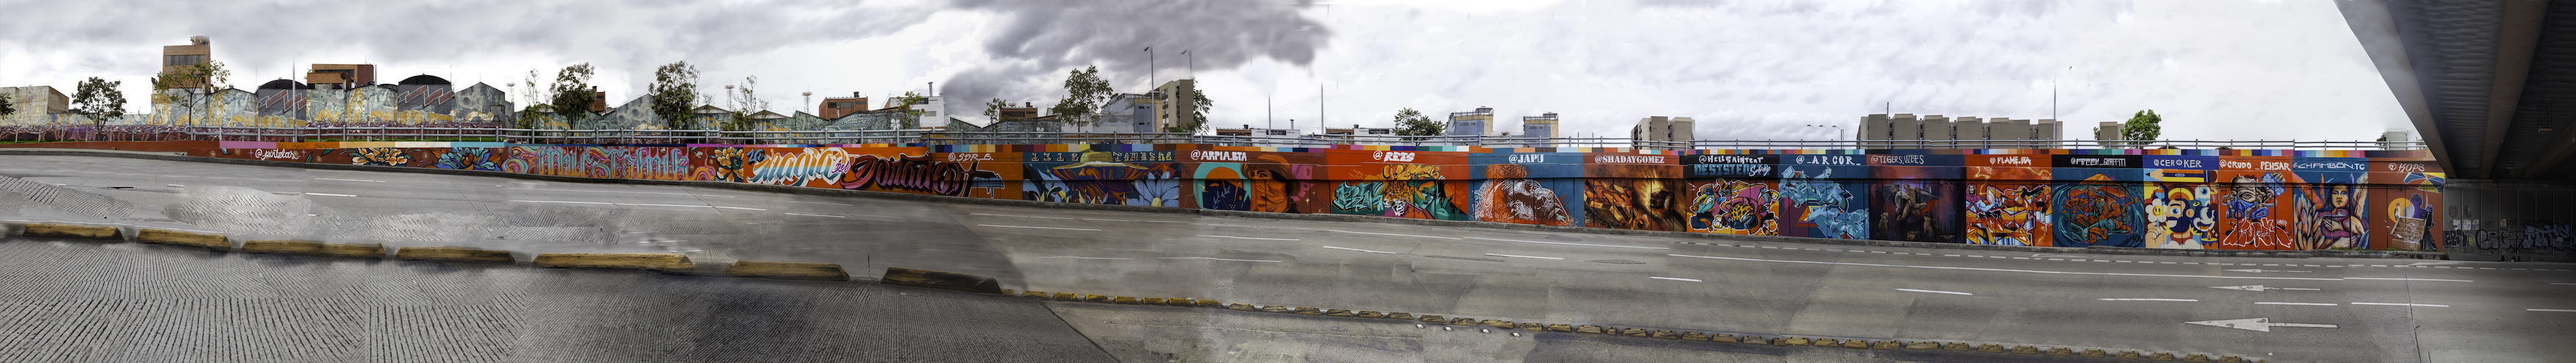 Mural Calle 26 - Punto 3